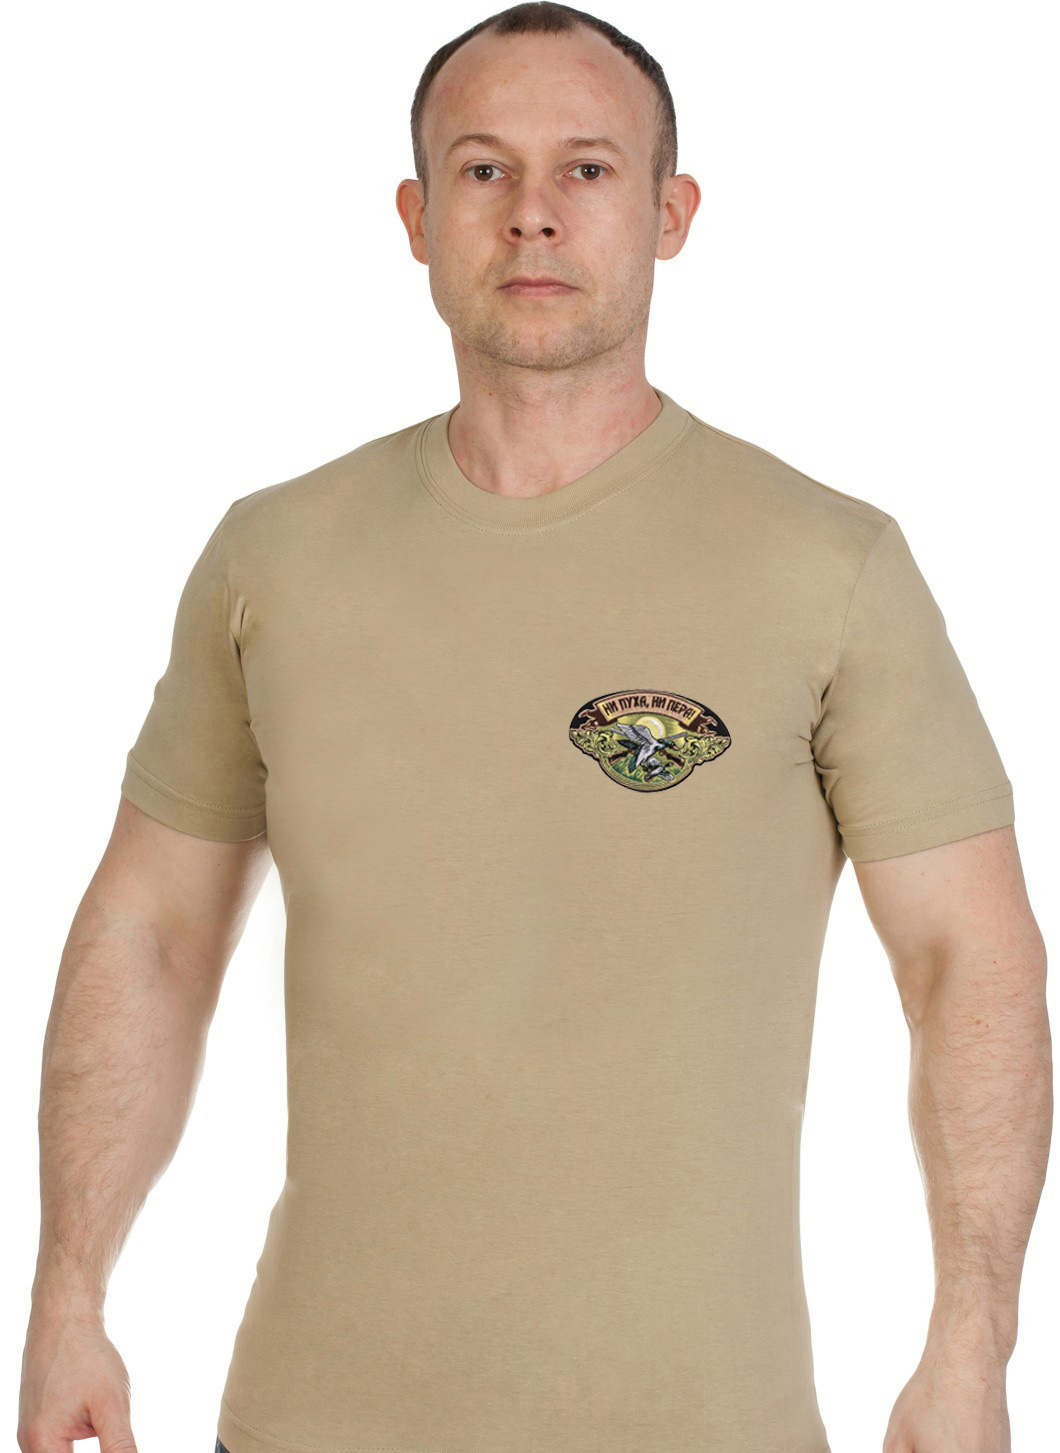 Купить надежную охотничью футболку с вышивкой Ни Пуха Ни Пера в подарок мужчине